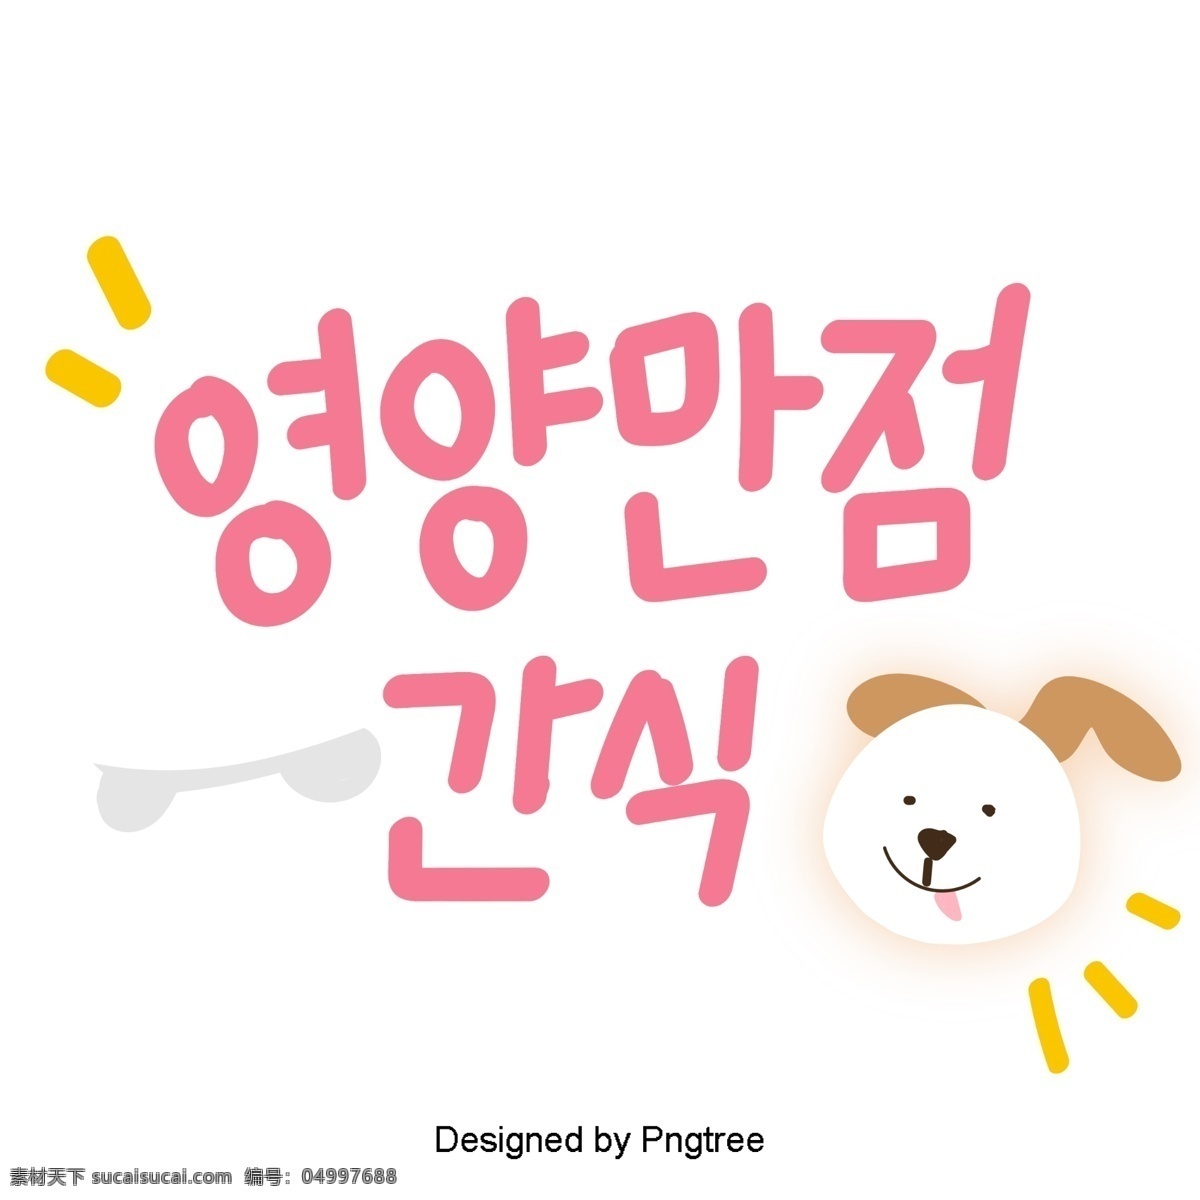 粉红色 韩国 字体 设置 可爱 狗 骨头 一些 卡通 元素 营养 字形 甜茶 因素 样式 ai材料 贴纸 动画片 心脏形 粉 营养评分食品